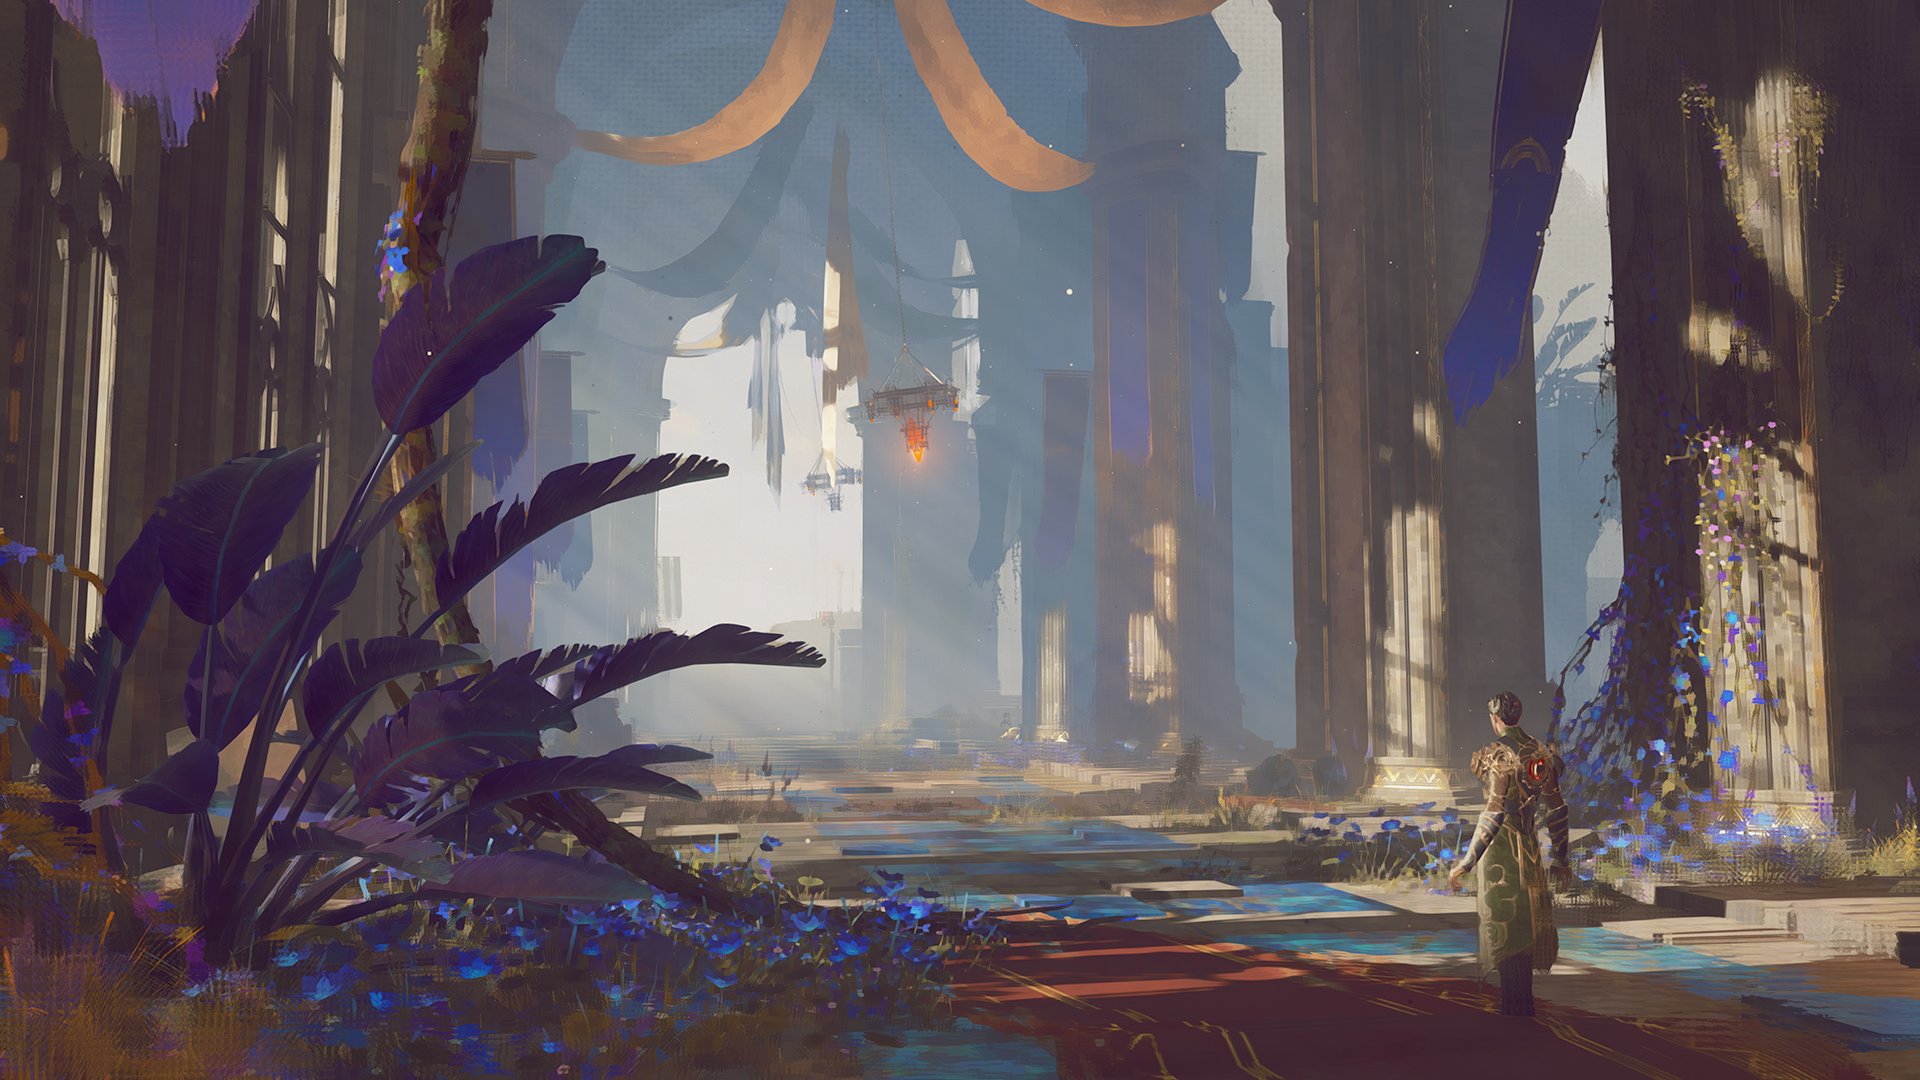 بازی Babylon's Fall در رویداد E3 2021 نمایش داده خواهد شد